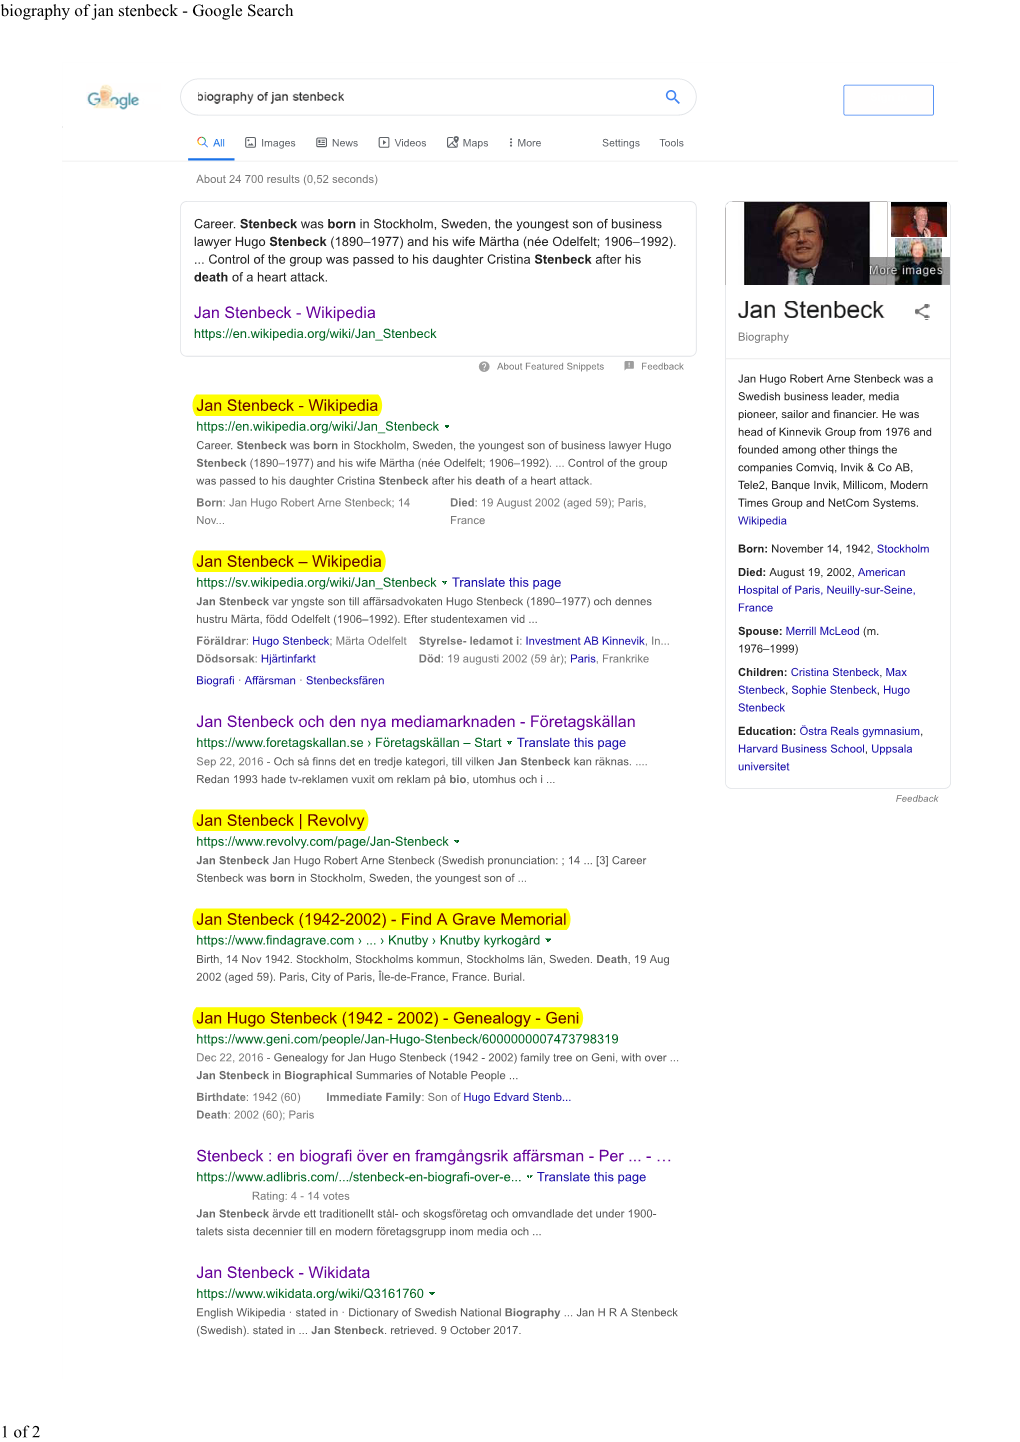 Biography of Jan Stenbeck - Google Search